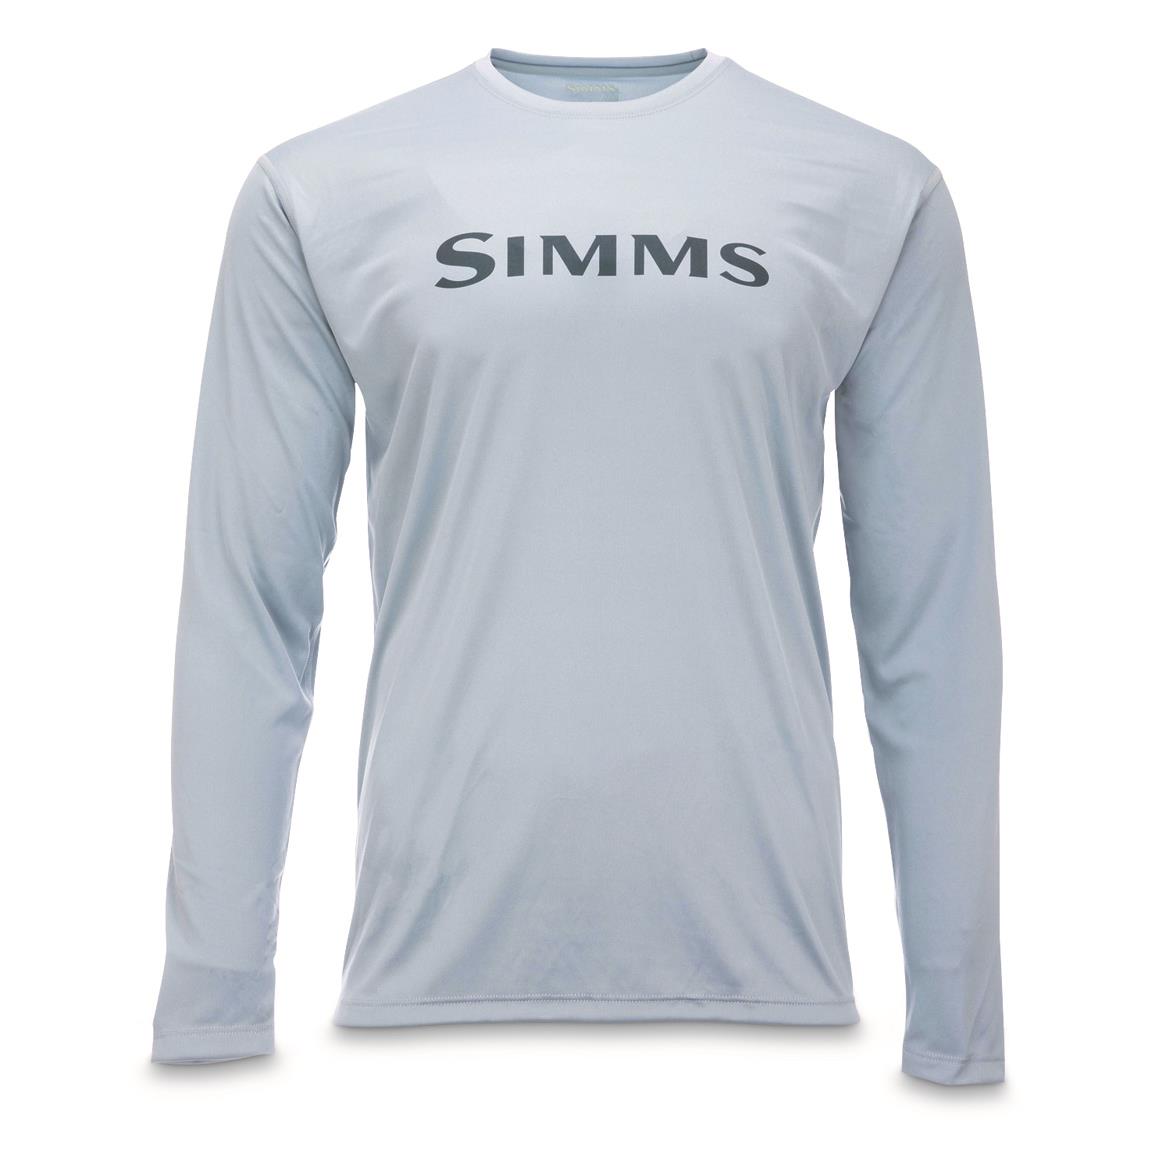 Simms Men's Tech Long-Sleeved Shirt, Steel Blue